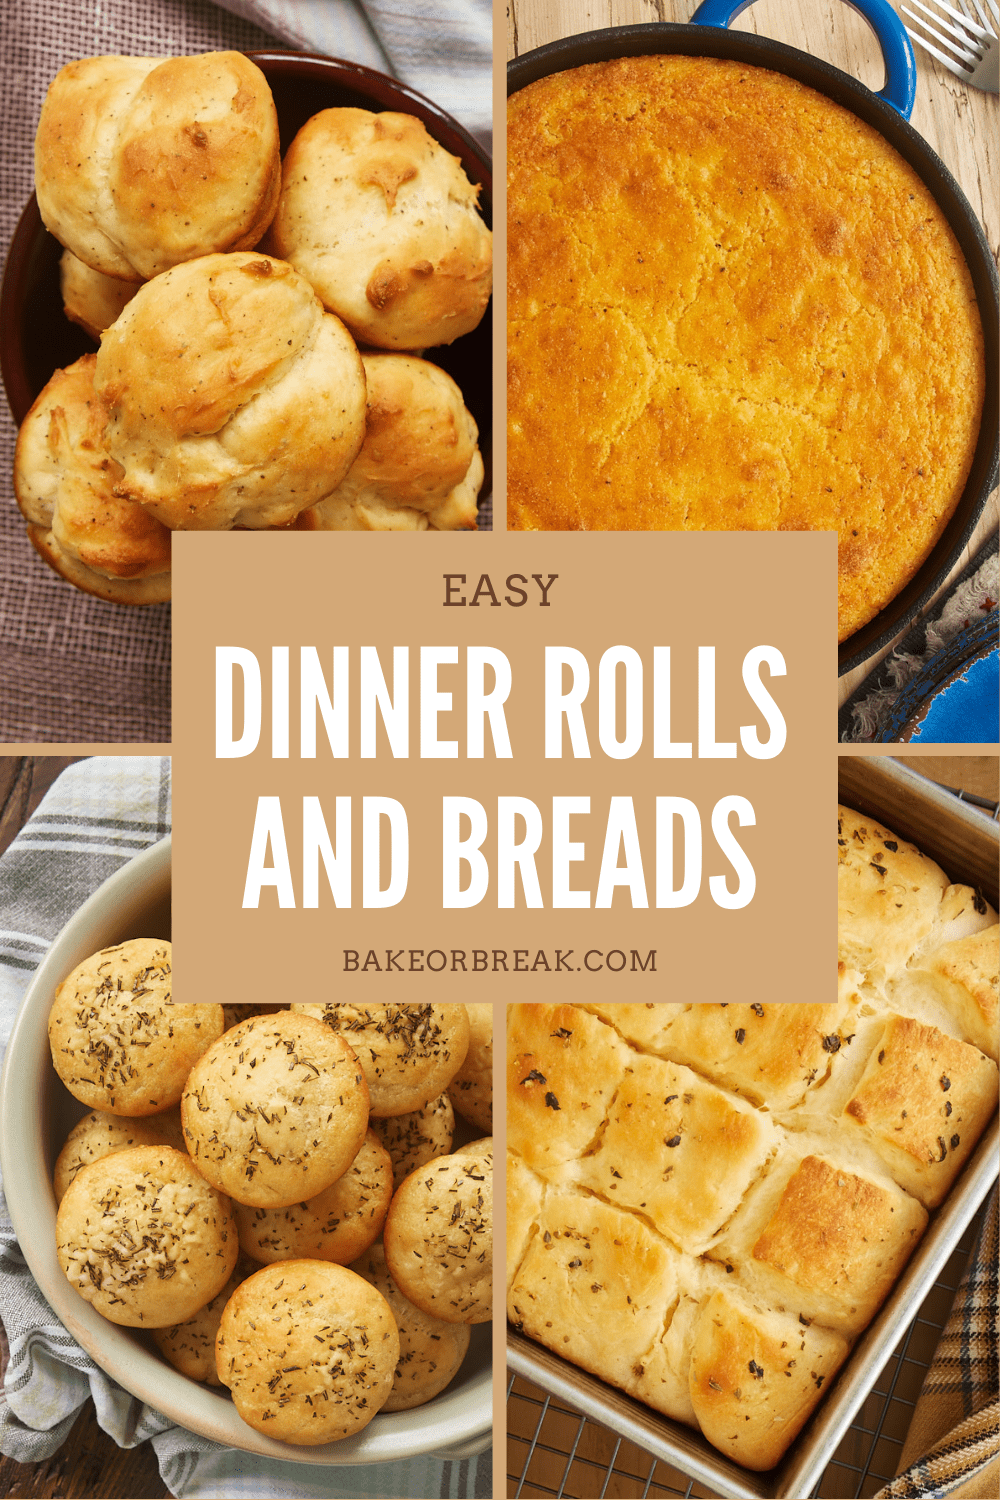 Easy Dinner Rolls and Breads bakeorbreak.com